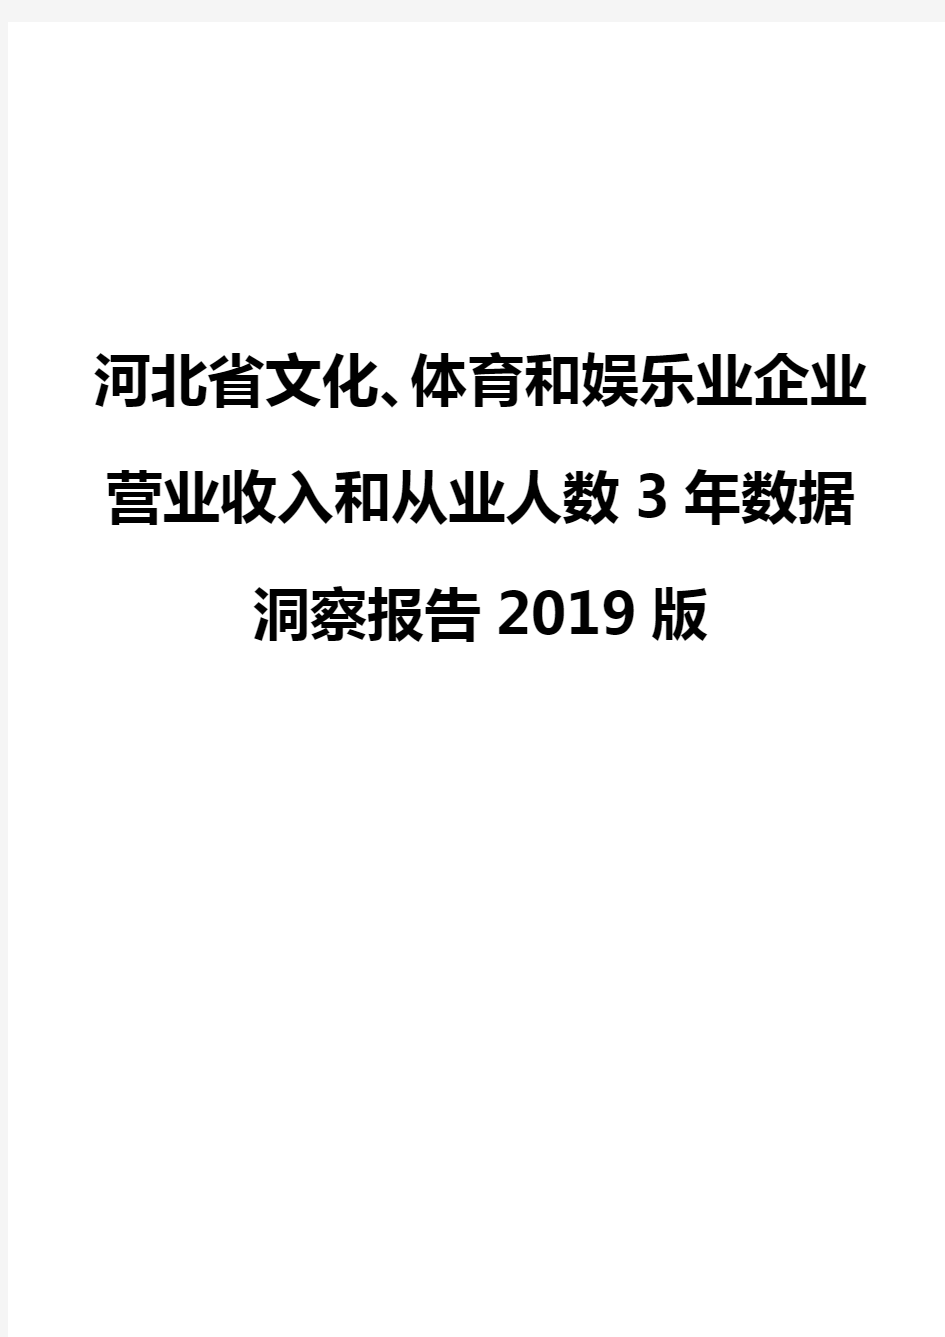 河北省文化、体育和娱乐业企业营业收入和从业人数3年数据洞察报告2019版